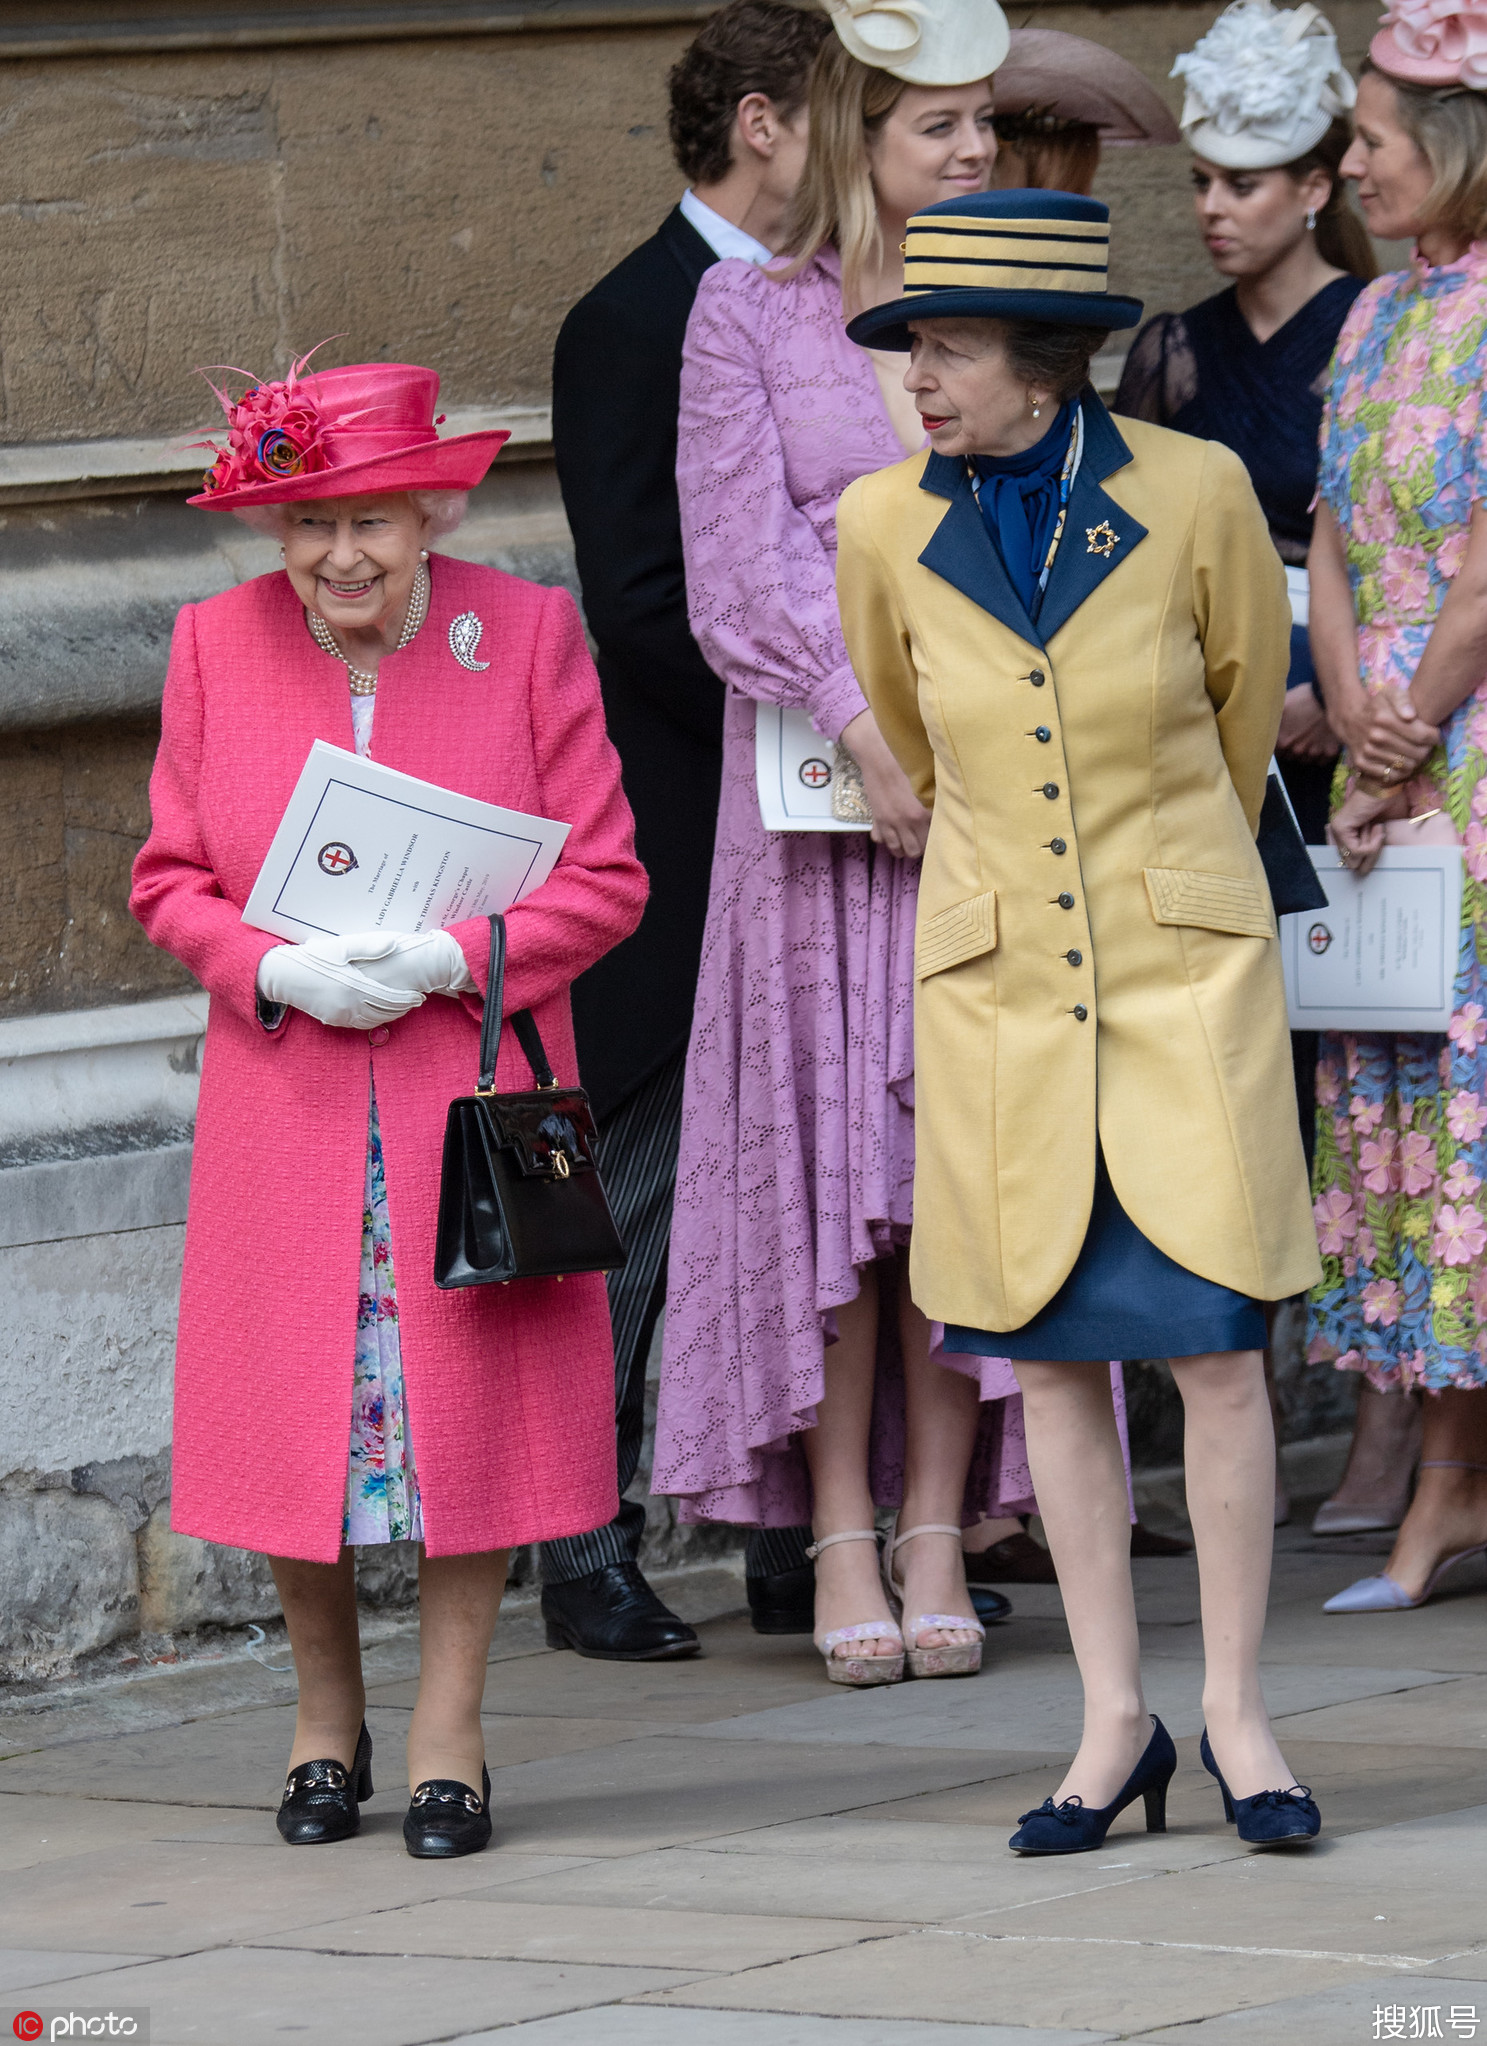 英国女王出席侄女婚礼 桃红色套装比新娘更吸睛